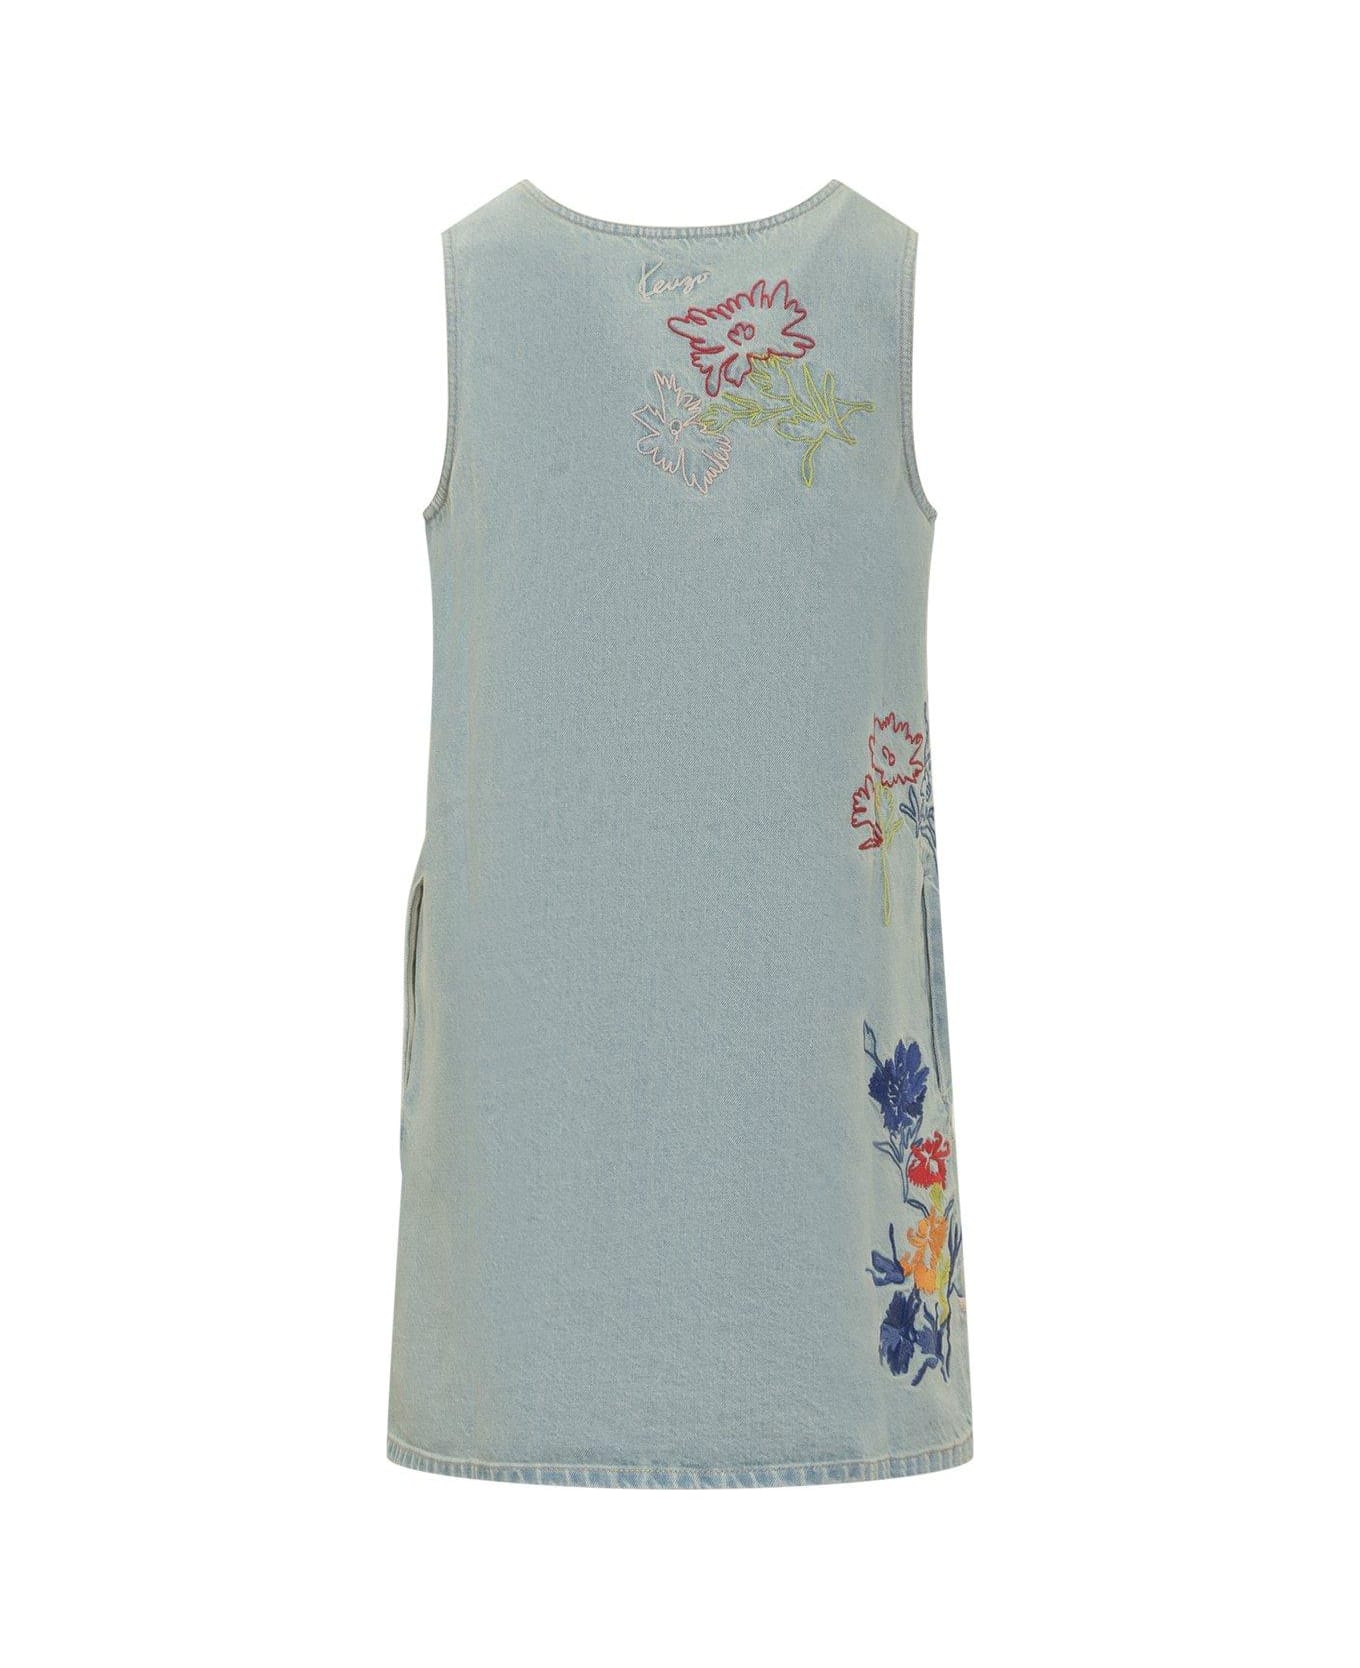 Kenzo Floral Patterned Denim Dress - STONE WASHED BLUE